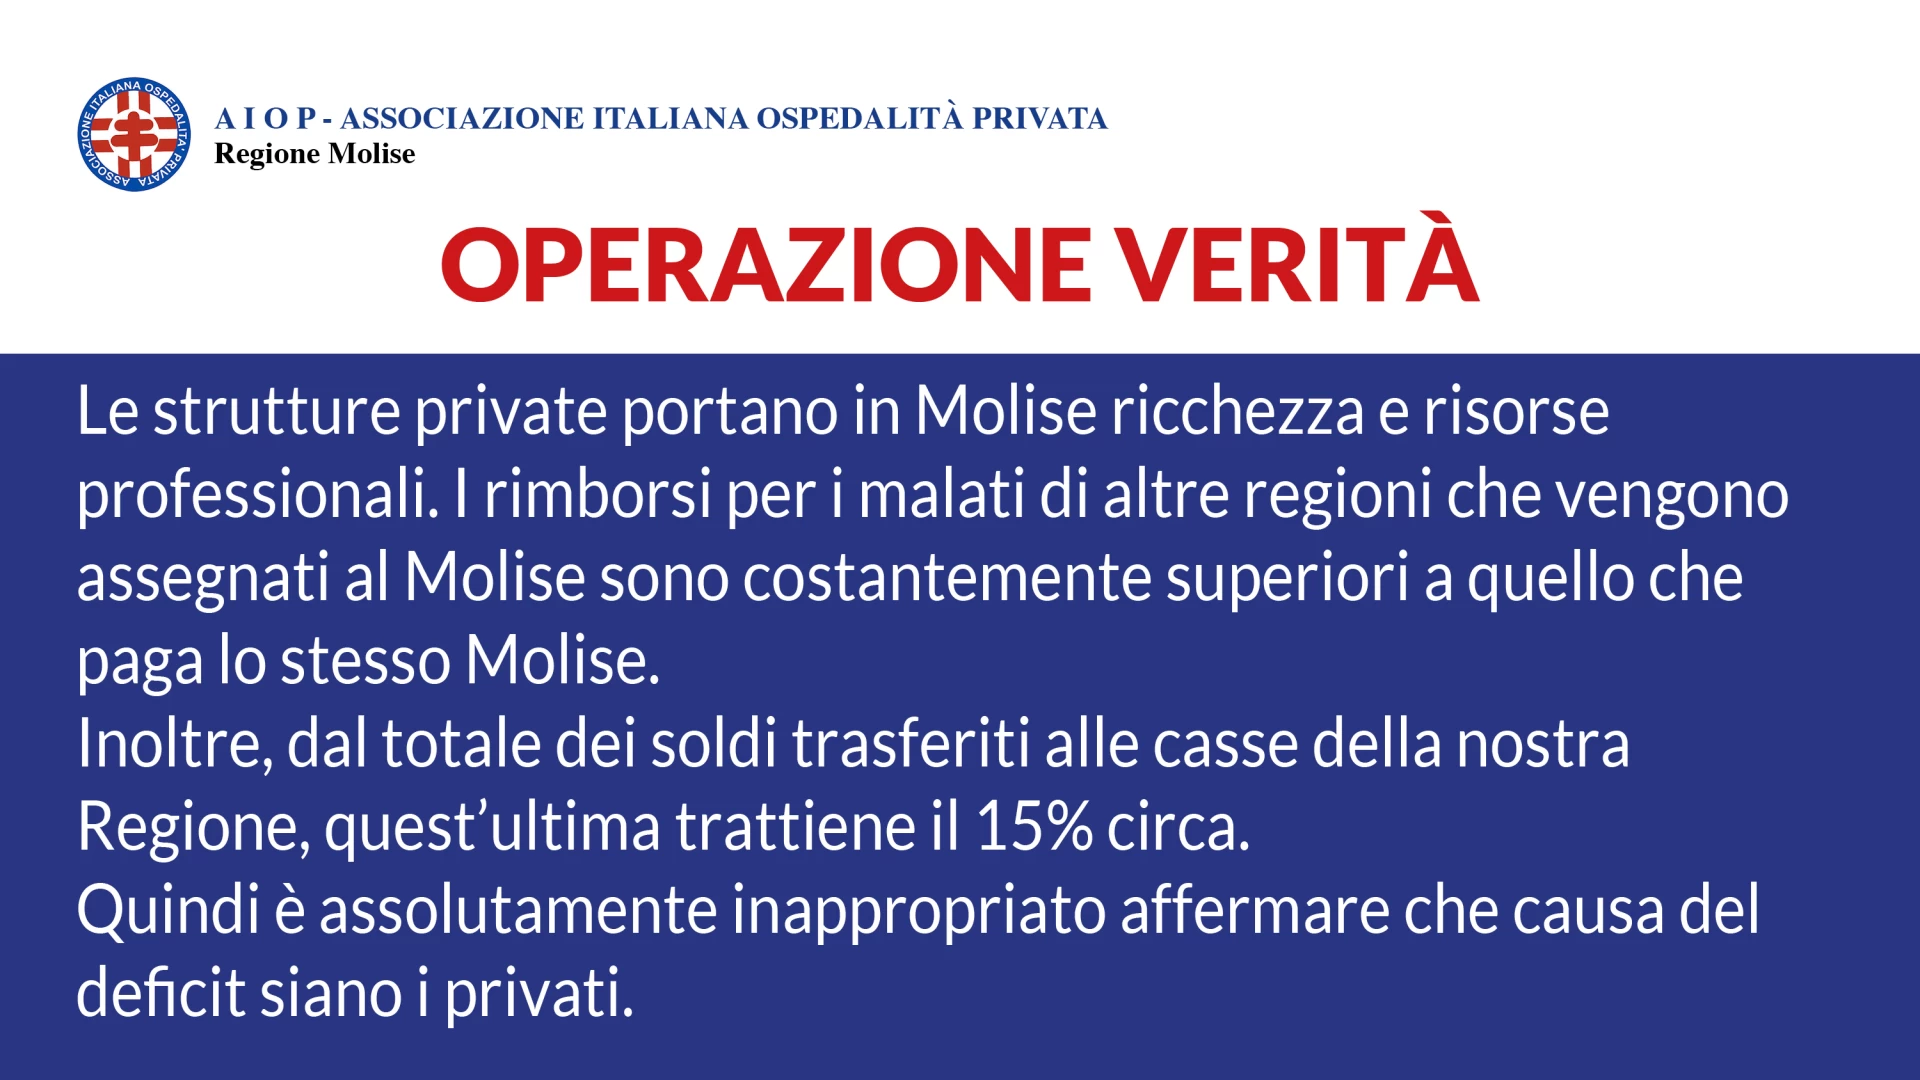 Continua l’operazione verità dell’Aiop Molise. Il “Caso Molise” nella nota dell’Associazione Italiana Ospedalità privata.